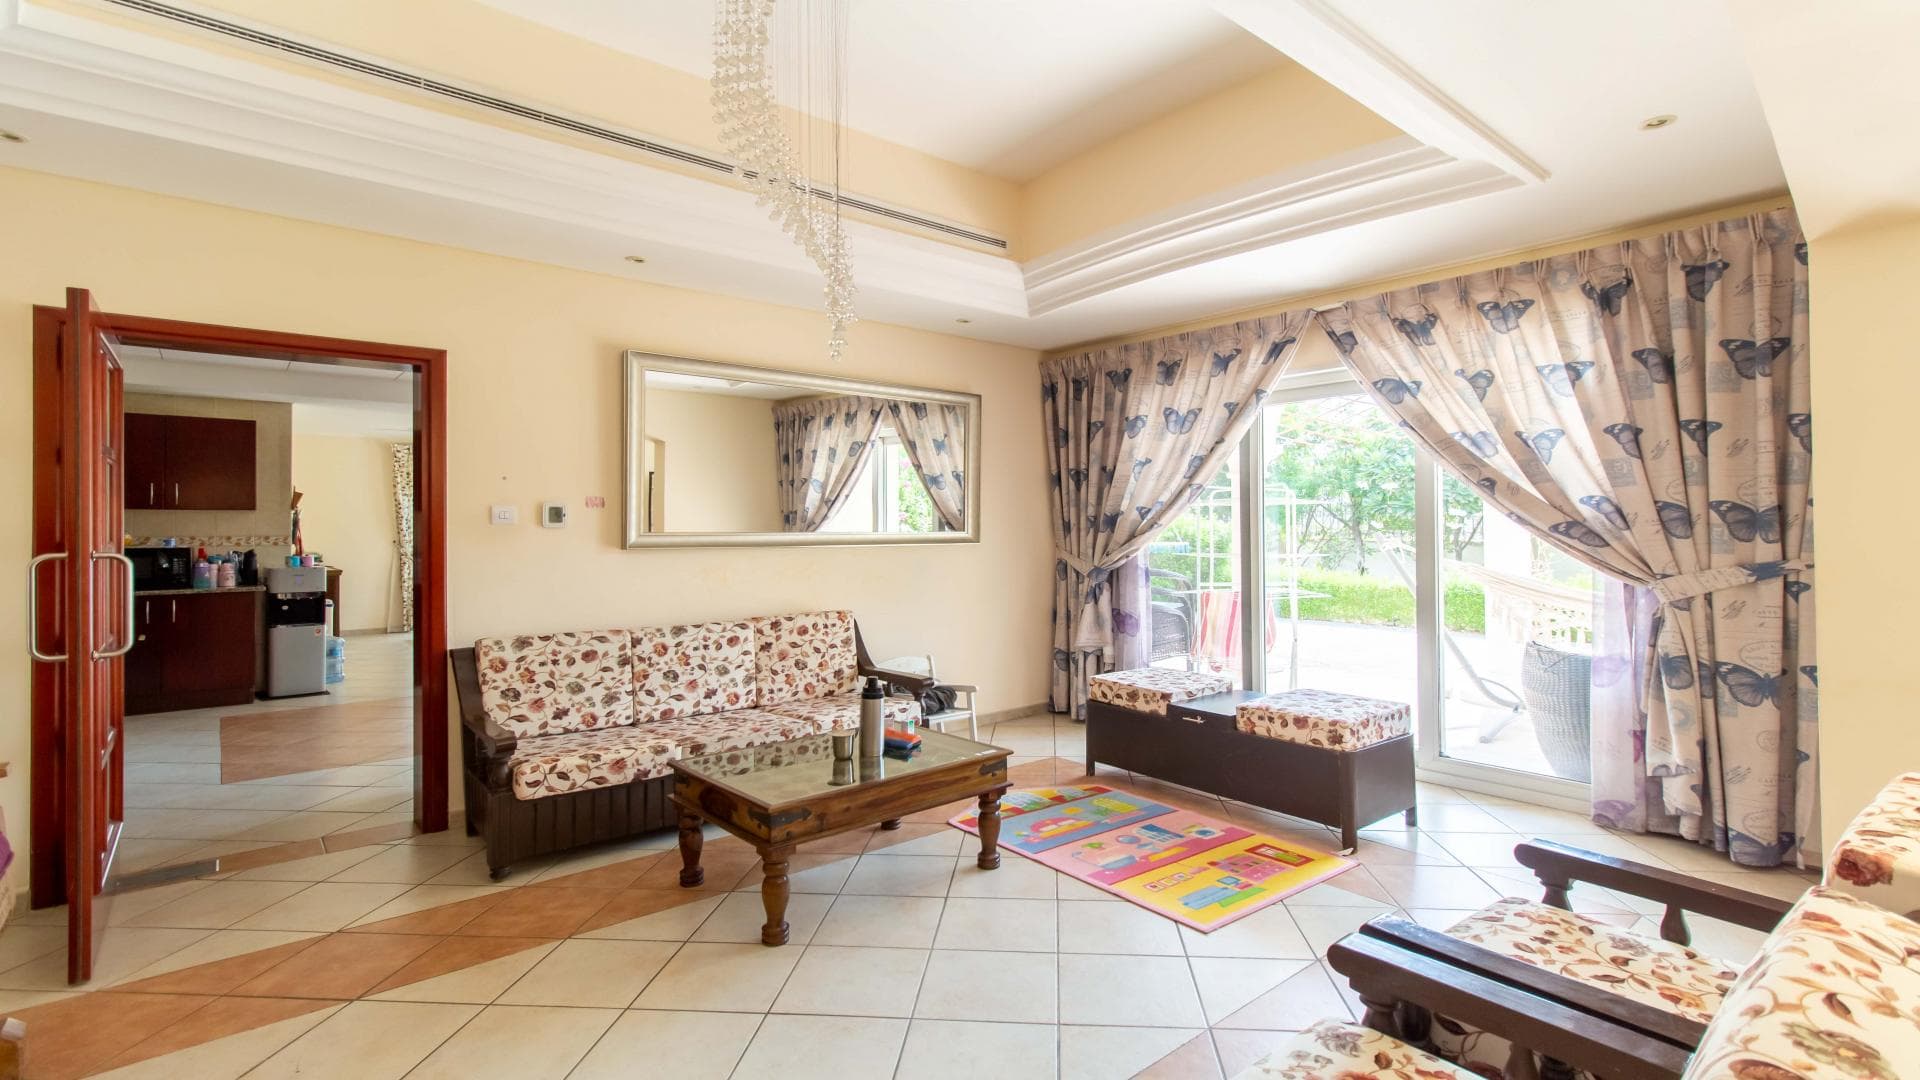 5 Bedroom Villa For Rent Al Thamam 36 Lp37870 27f24c40d8585e0.jpg